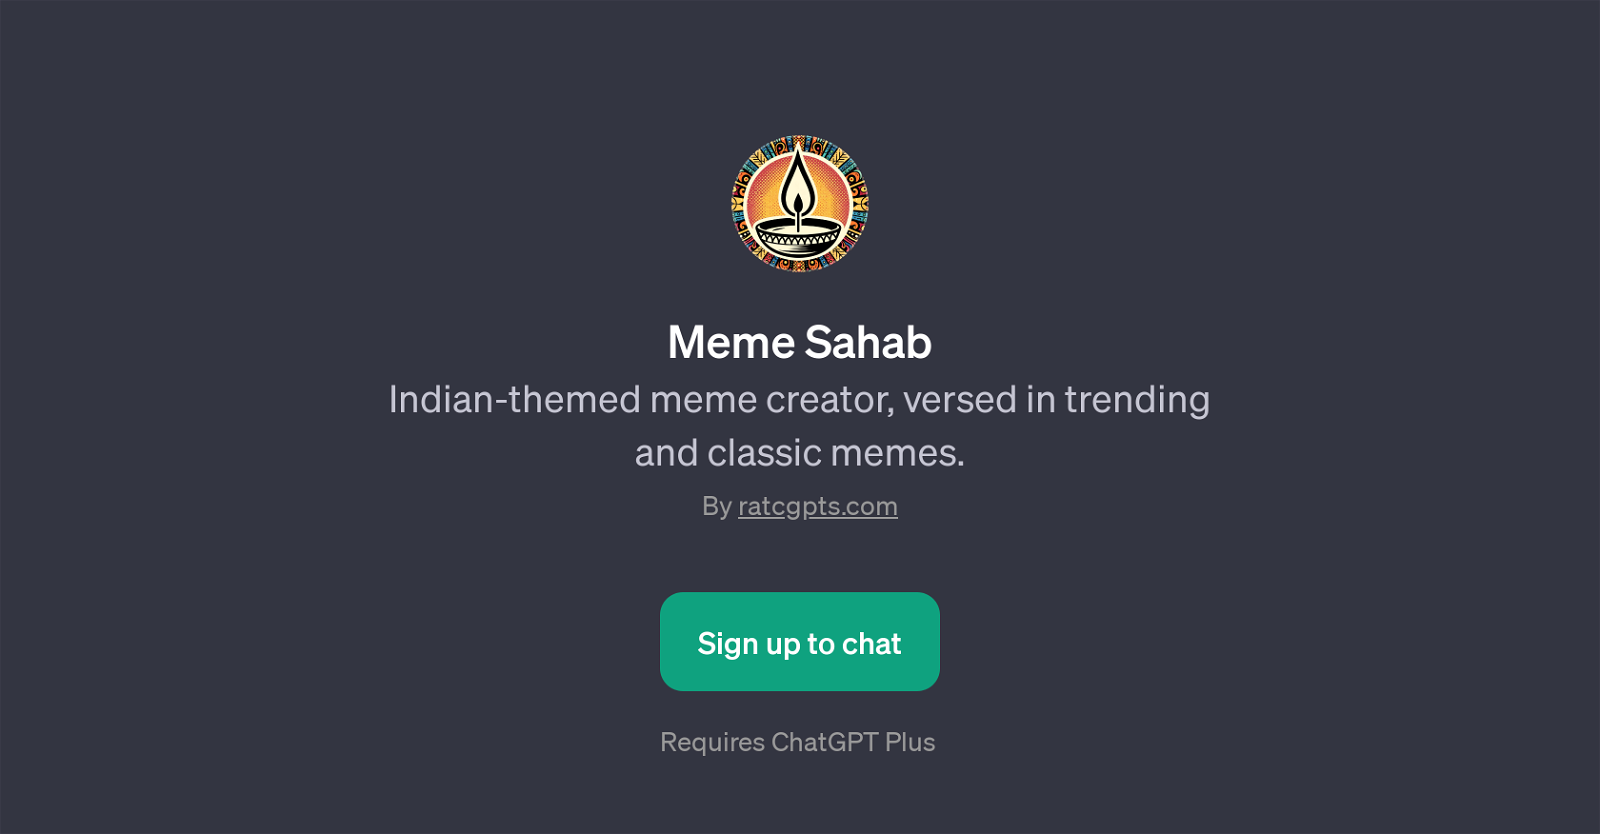 Meme Sahab website